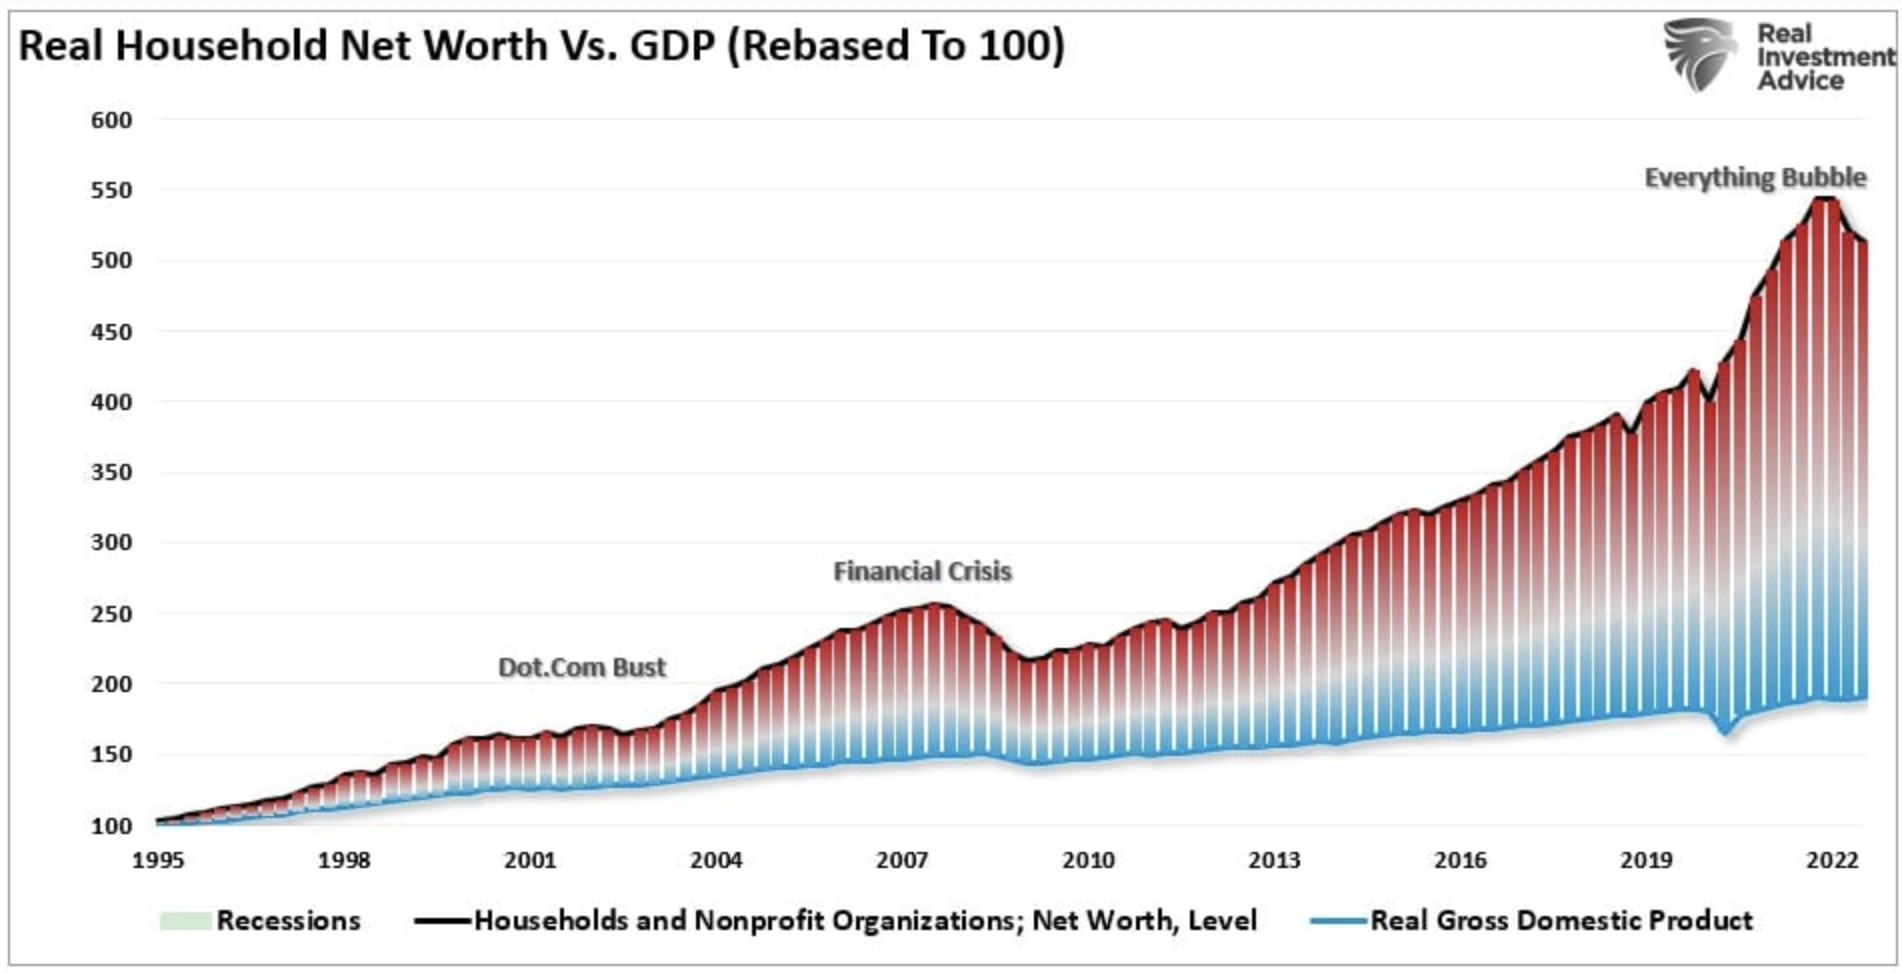 Reales Haushaltsvermögen im Vergleich zum BIP